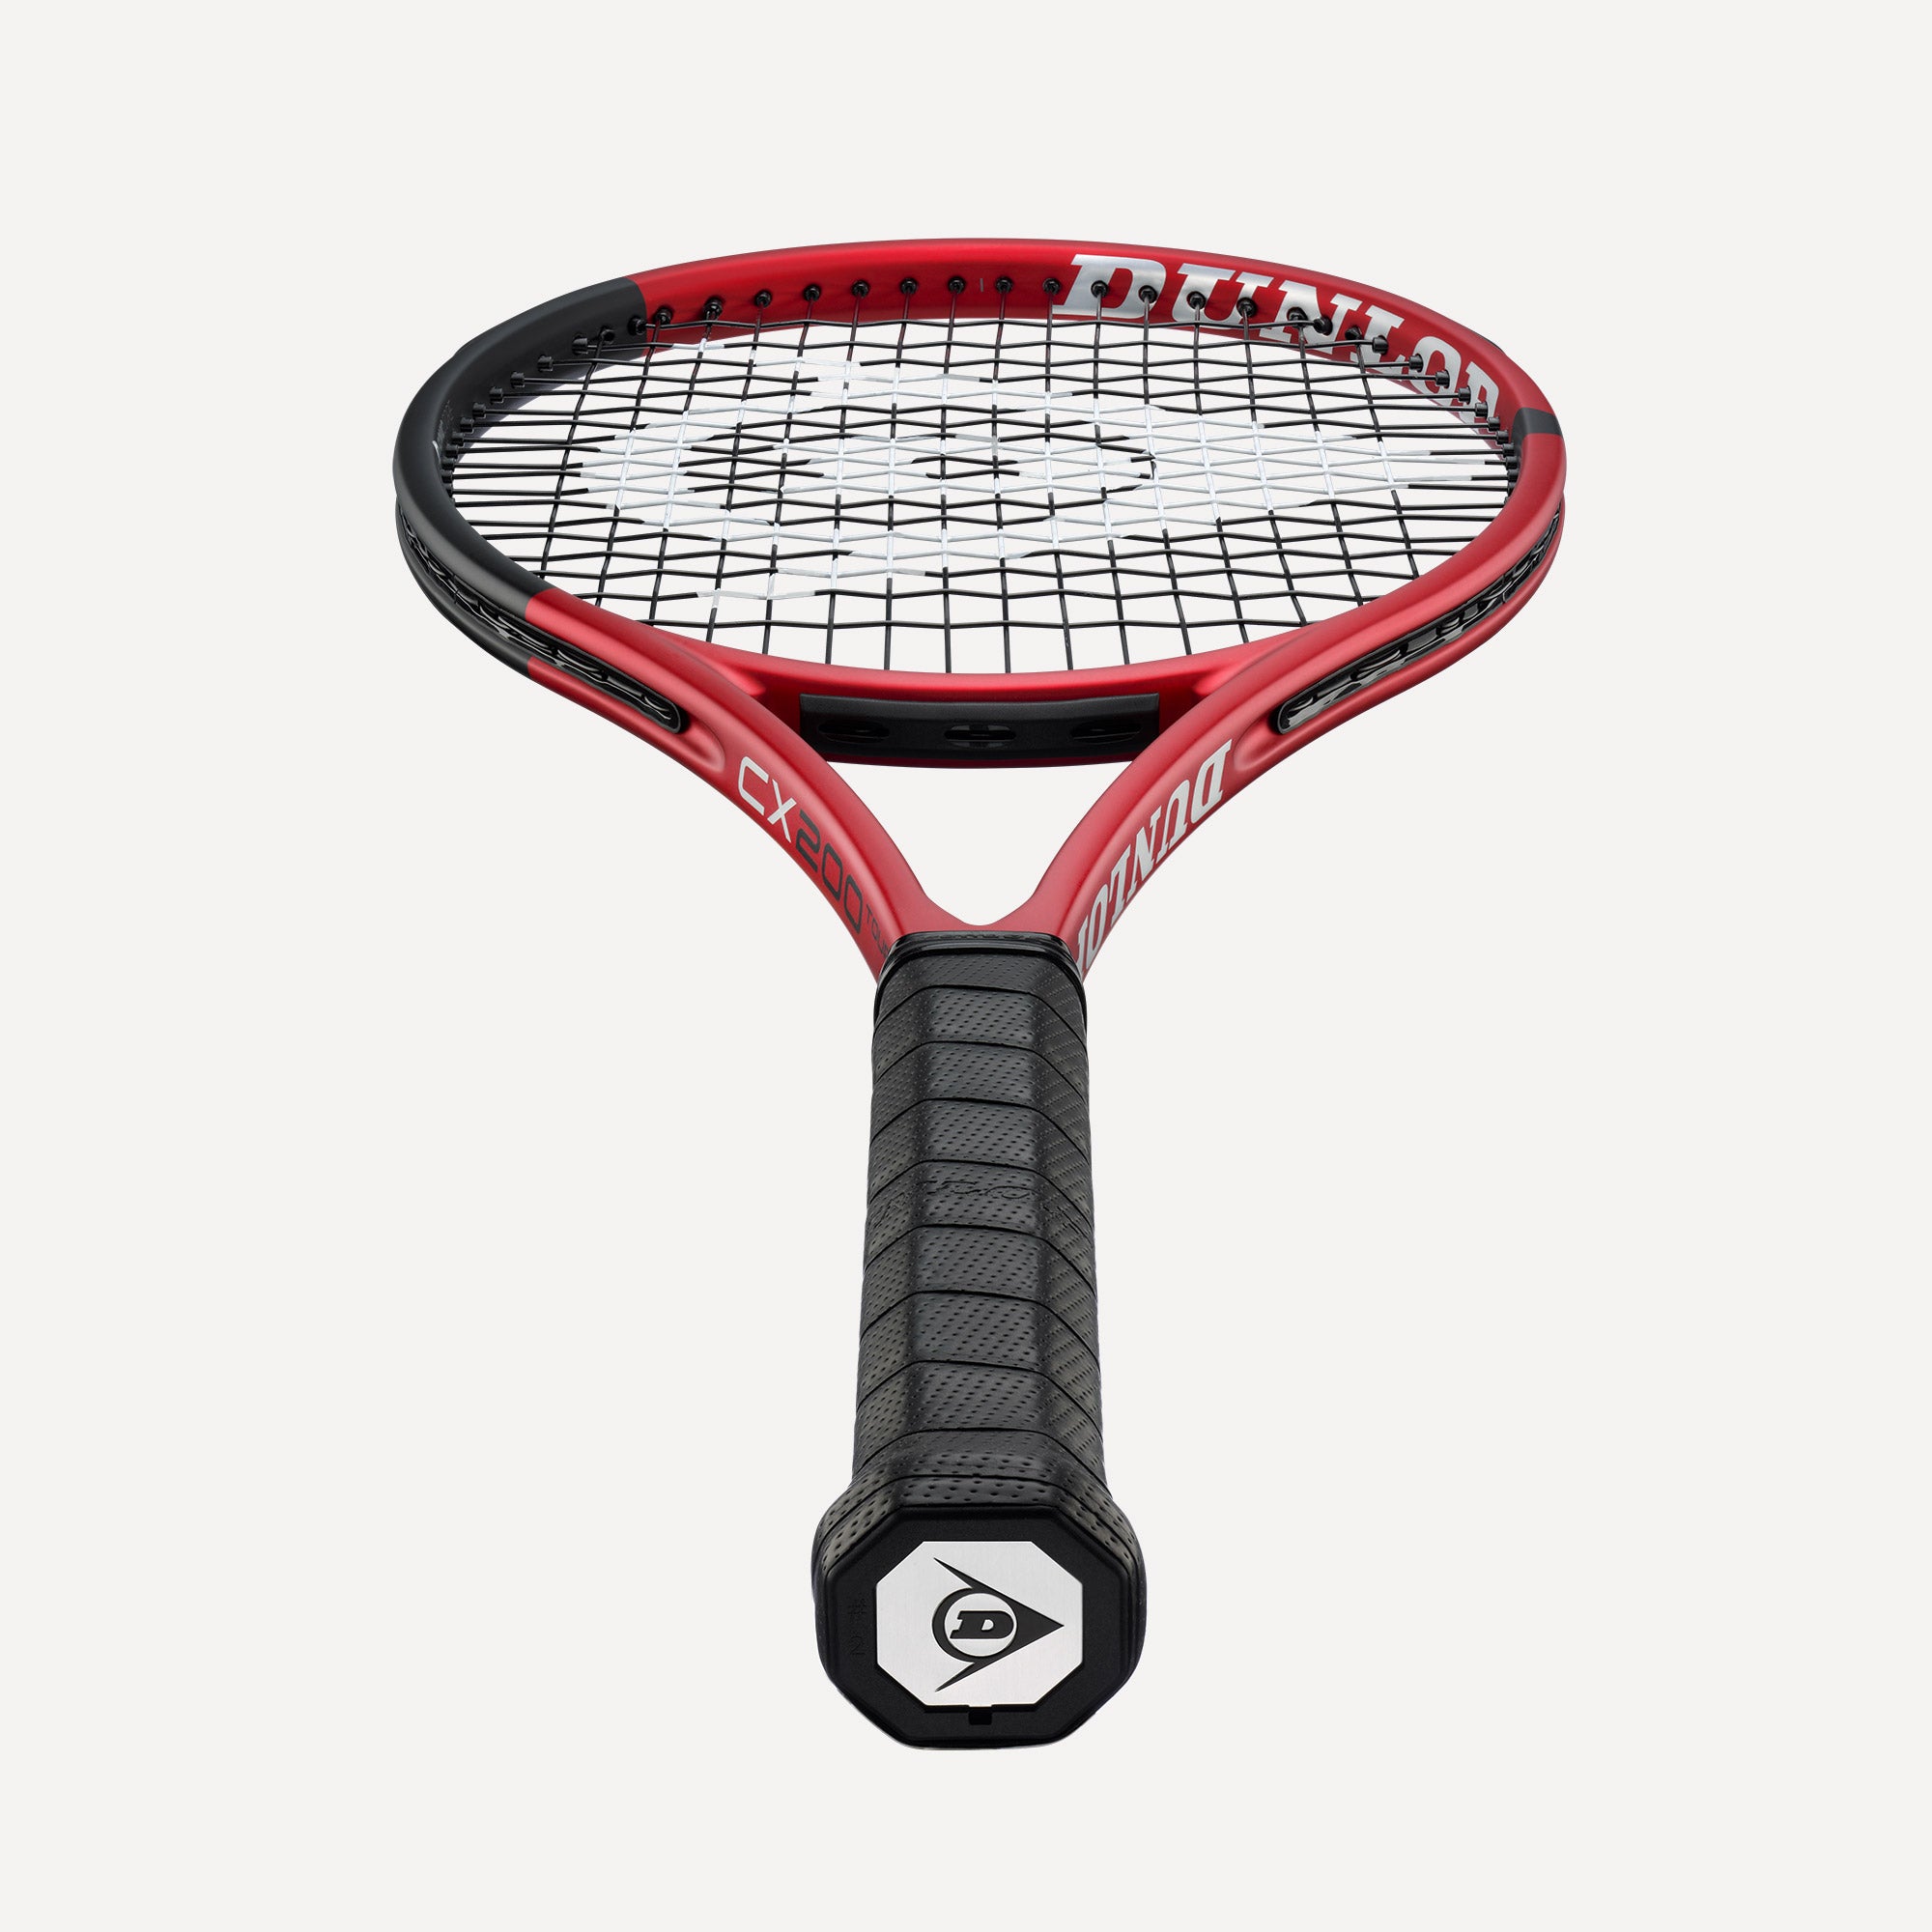 Dunlop CX 200 Tour 16x19 Tennis Racket  (3)